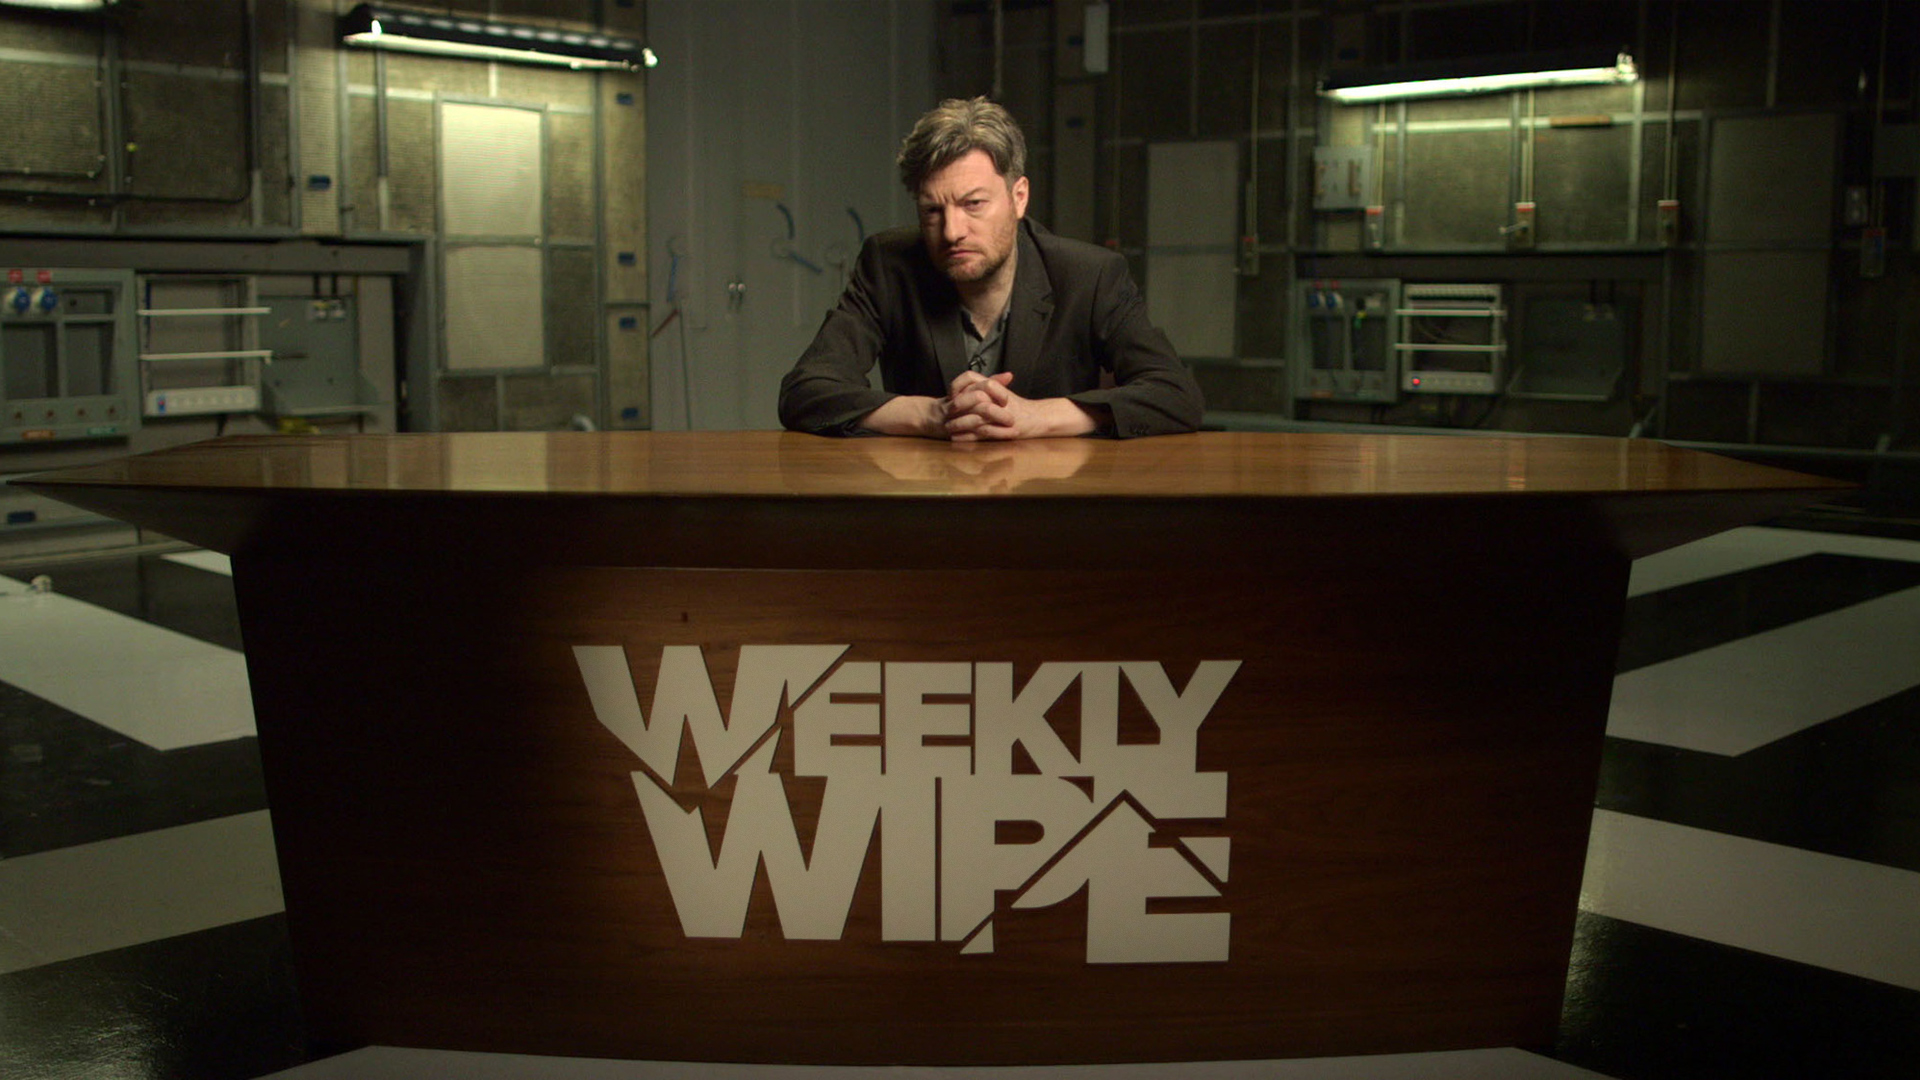 دانلود سریال Charlie Brooker’s Weekly Wipe